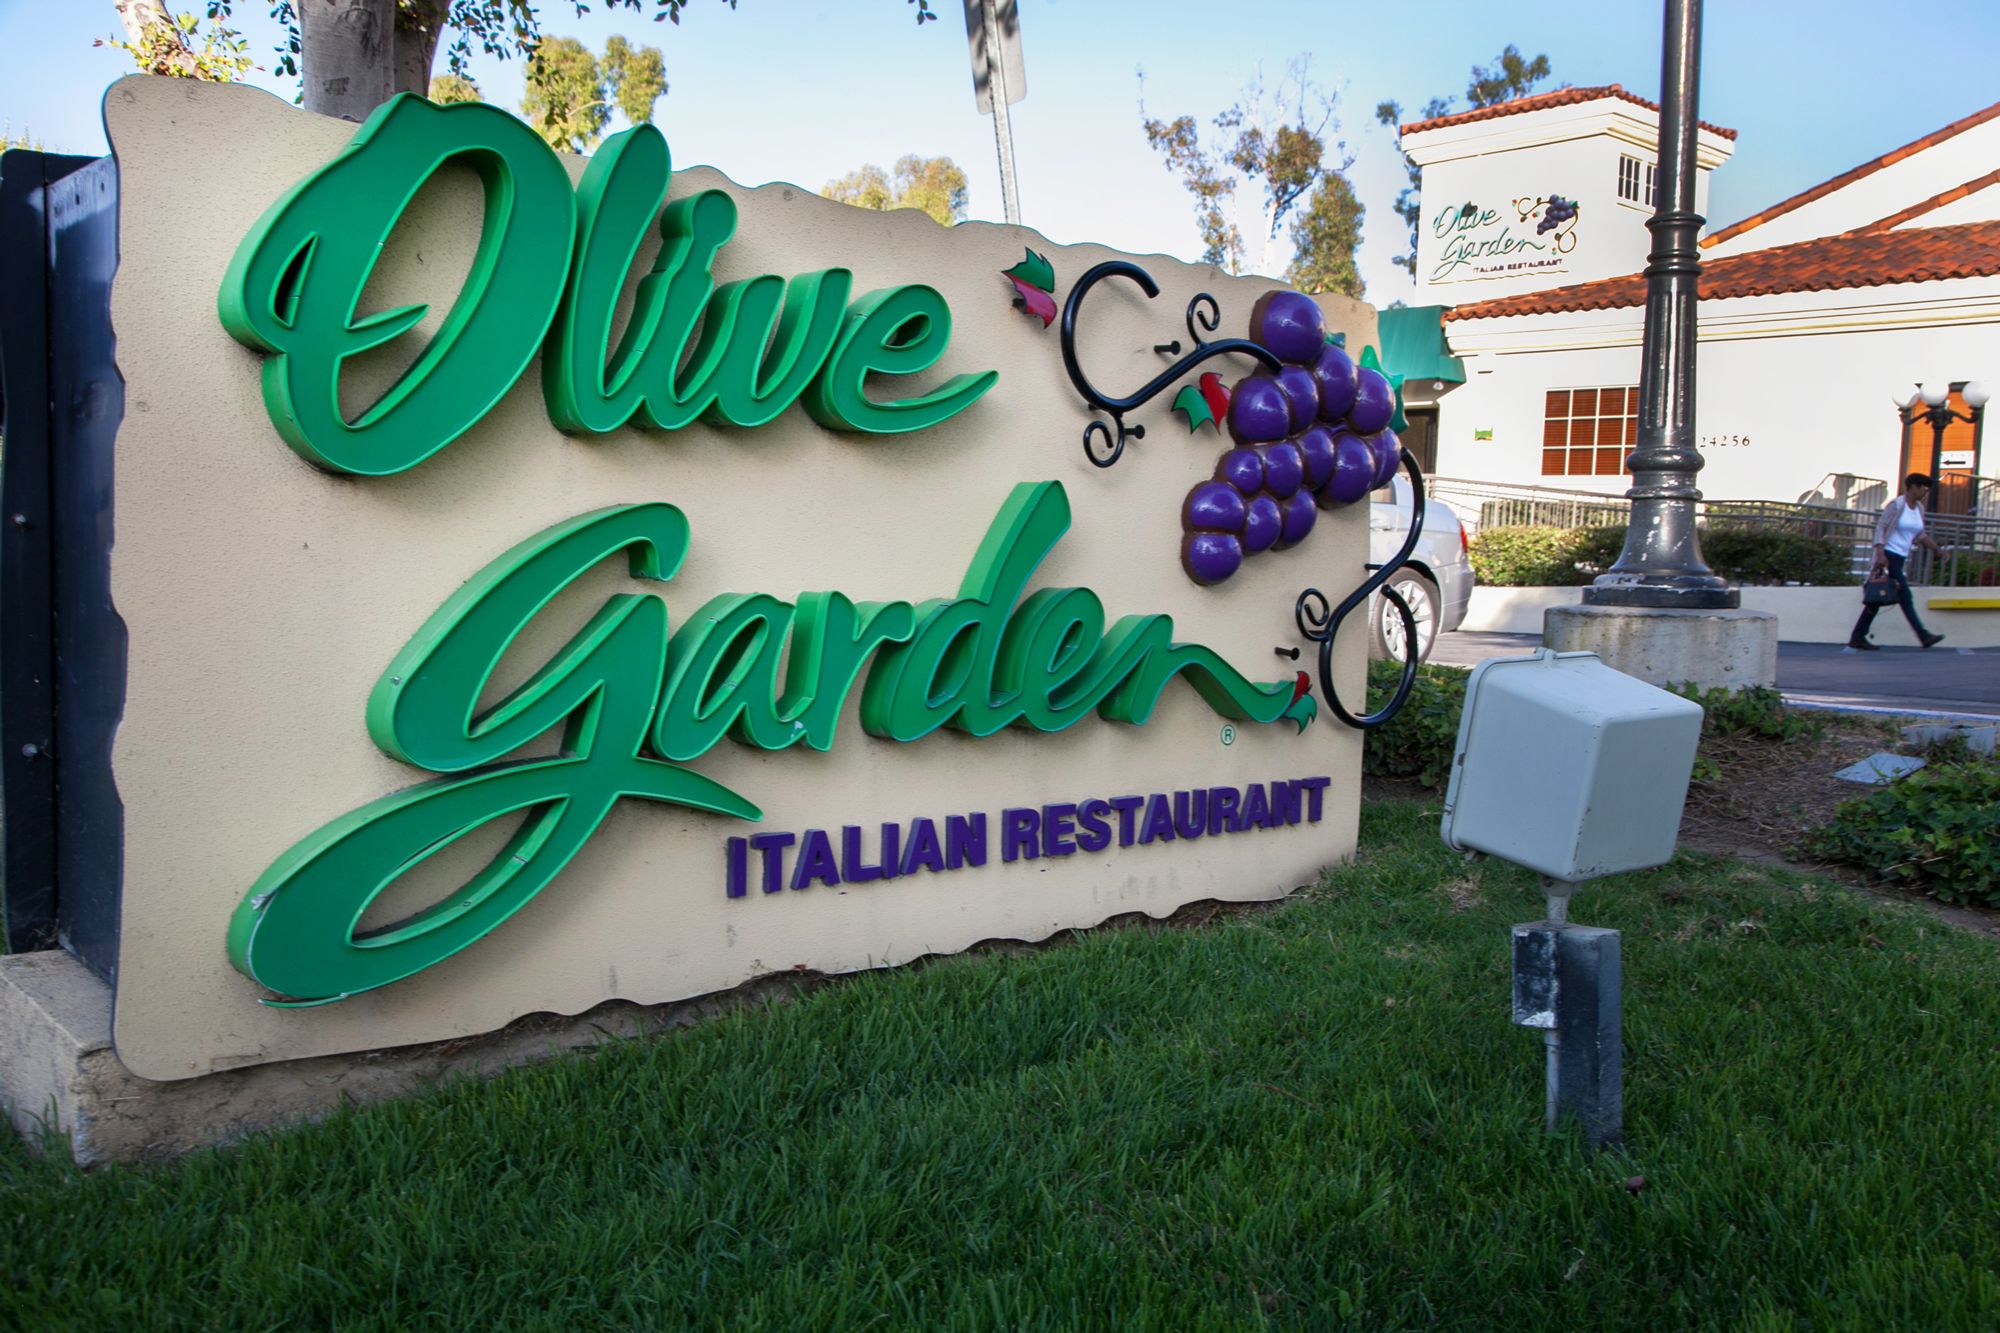 Shares of Olive Garden parent Darden skid after revenue miss